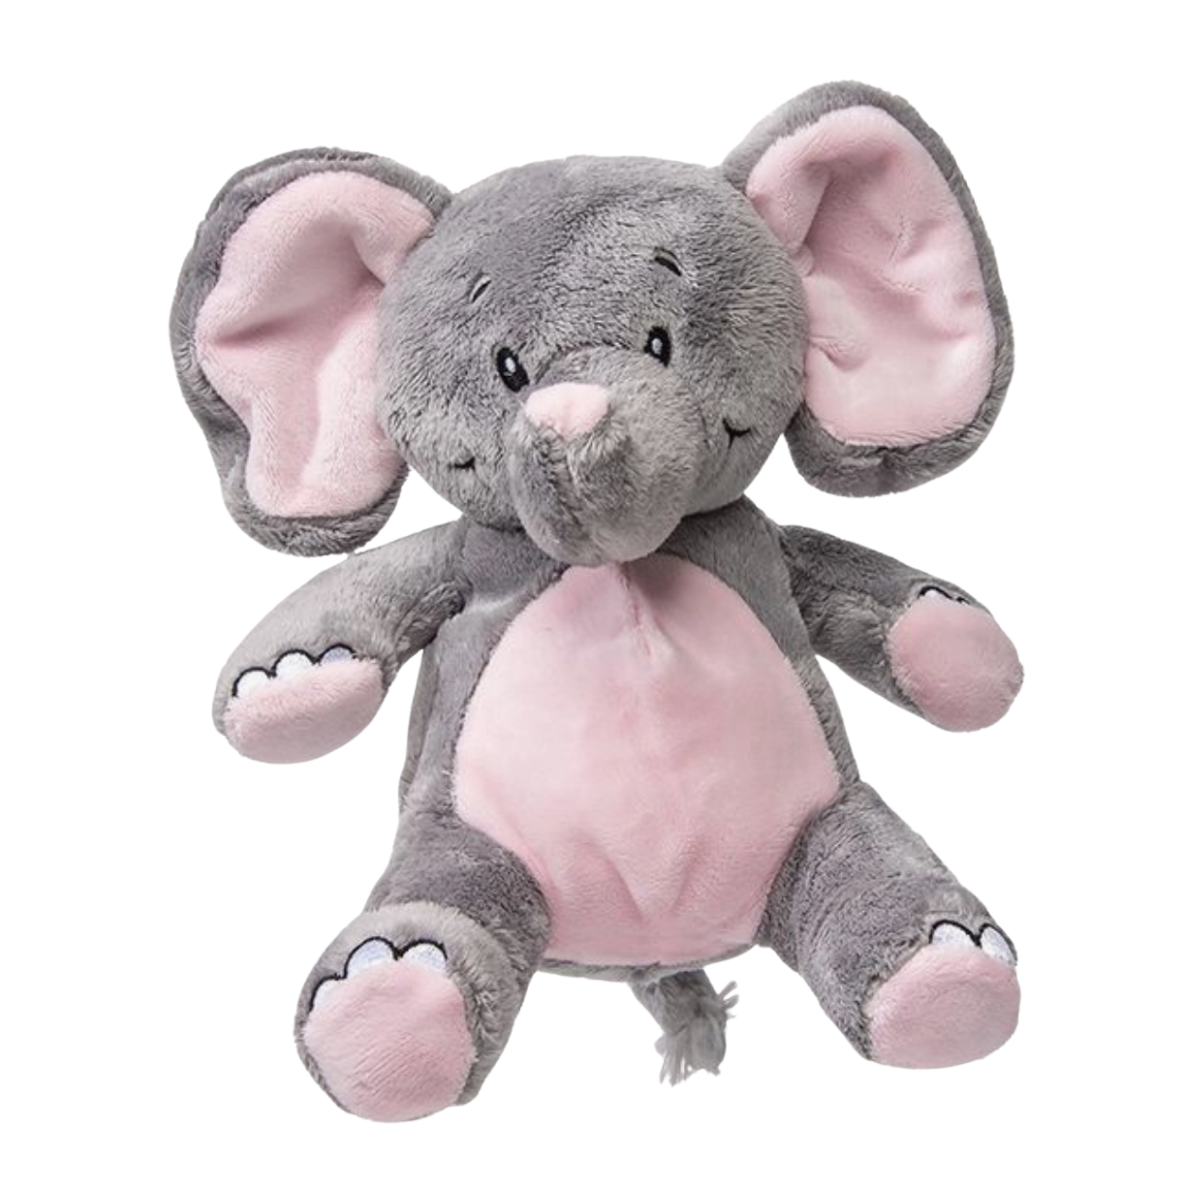 soft elephant teddy bearr